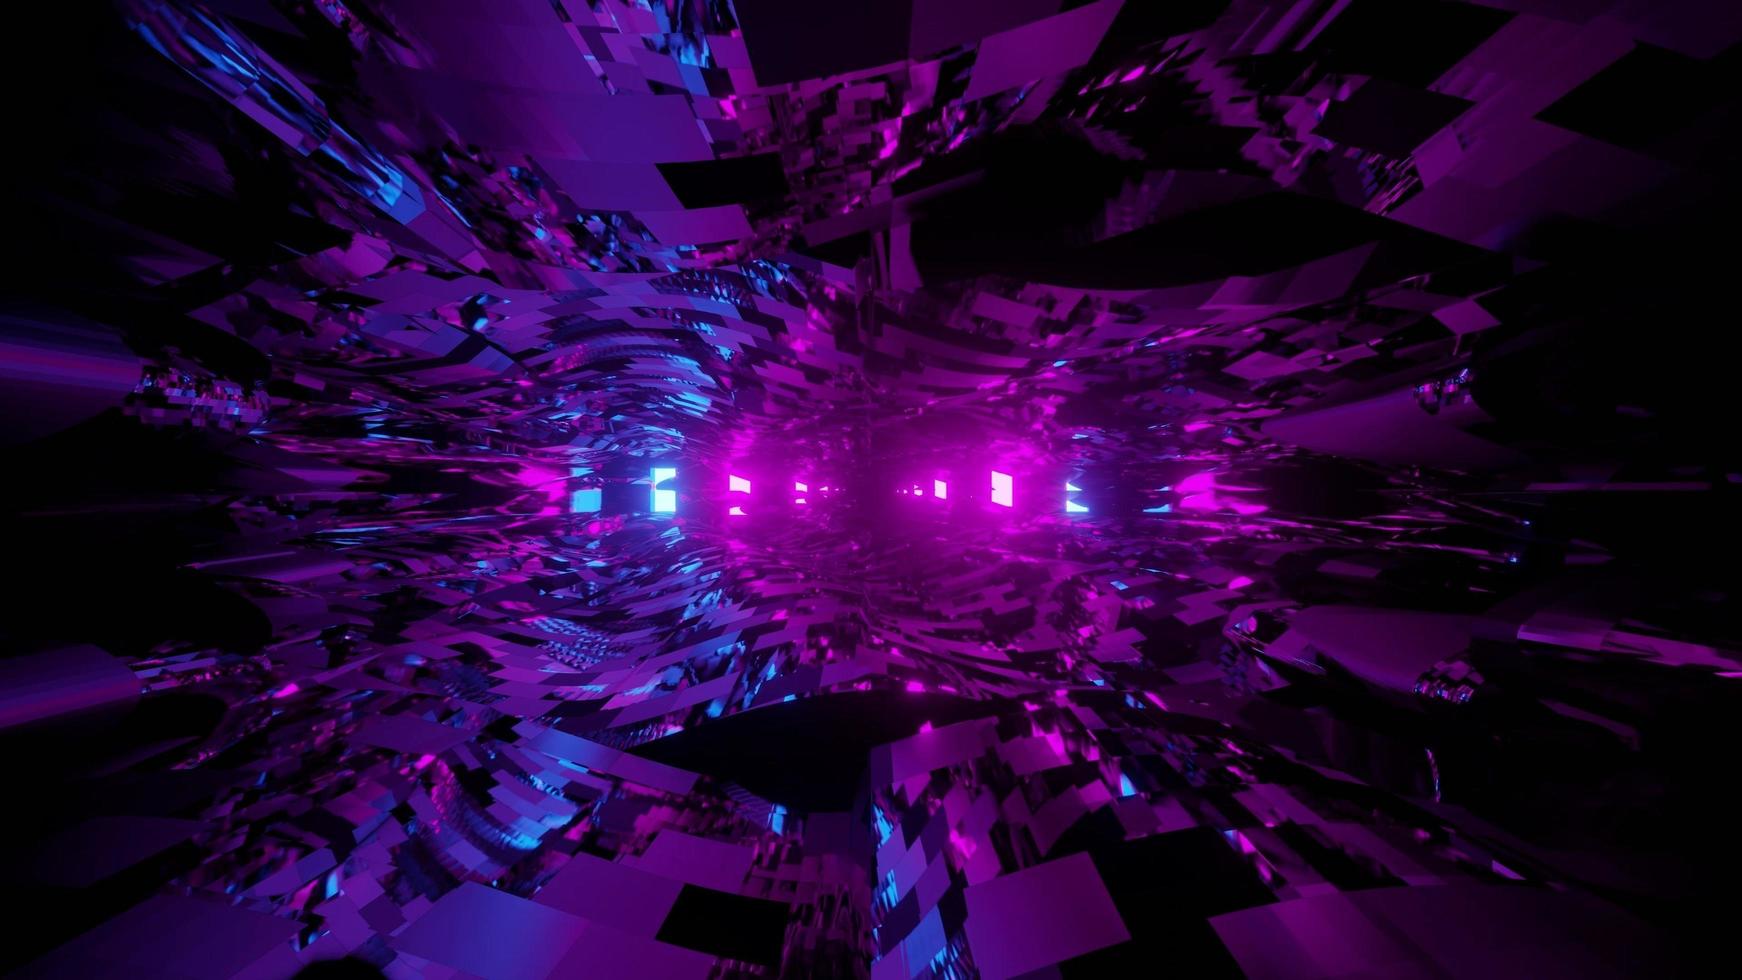 Abstract 3d illustration floue des vagues transparentes contre les lumières violettes photo